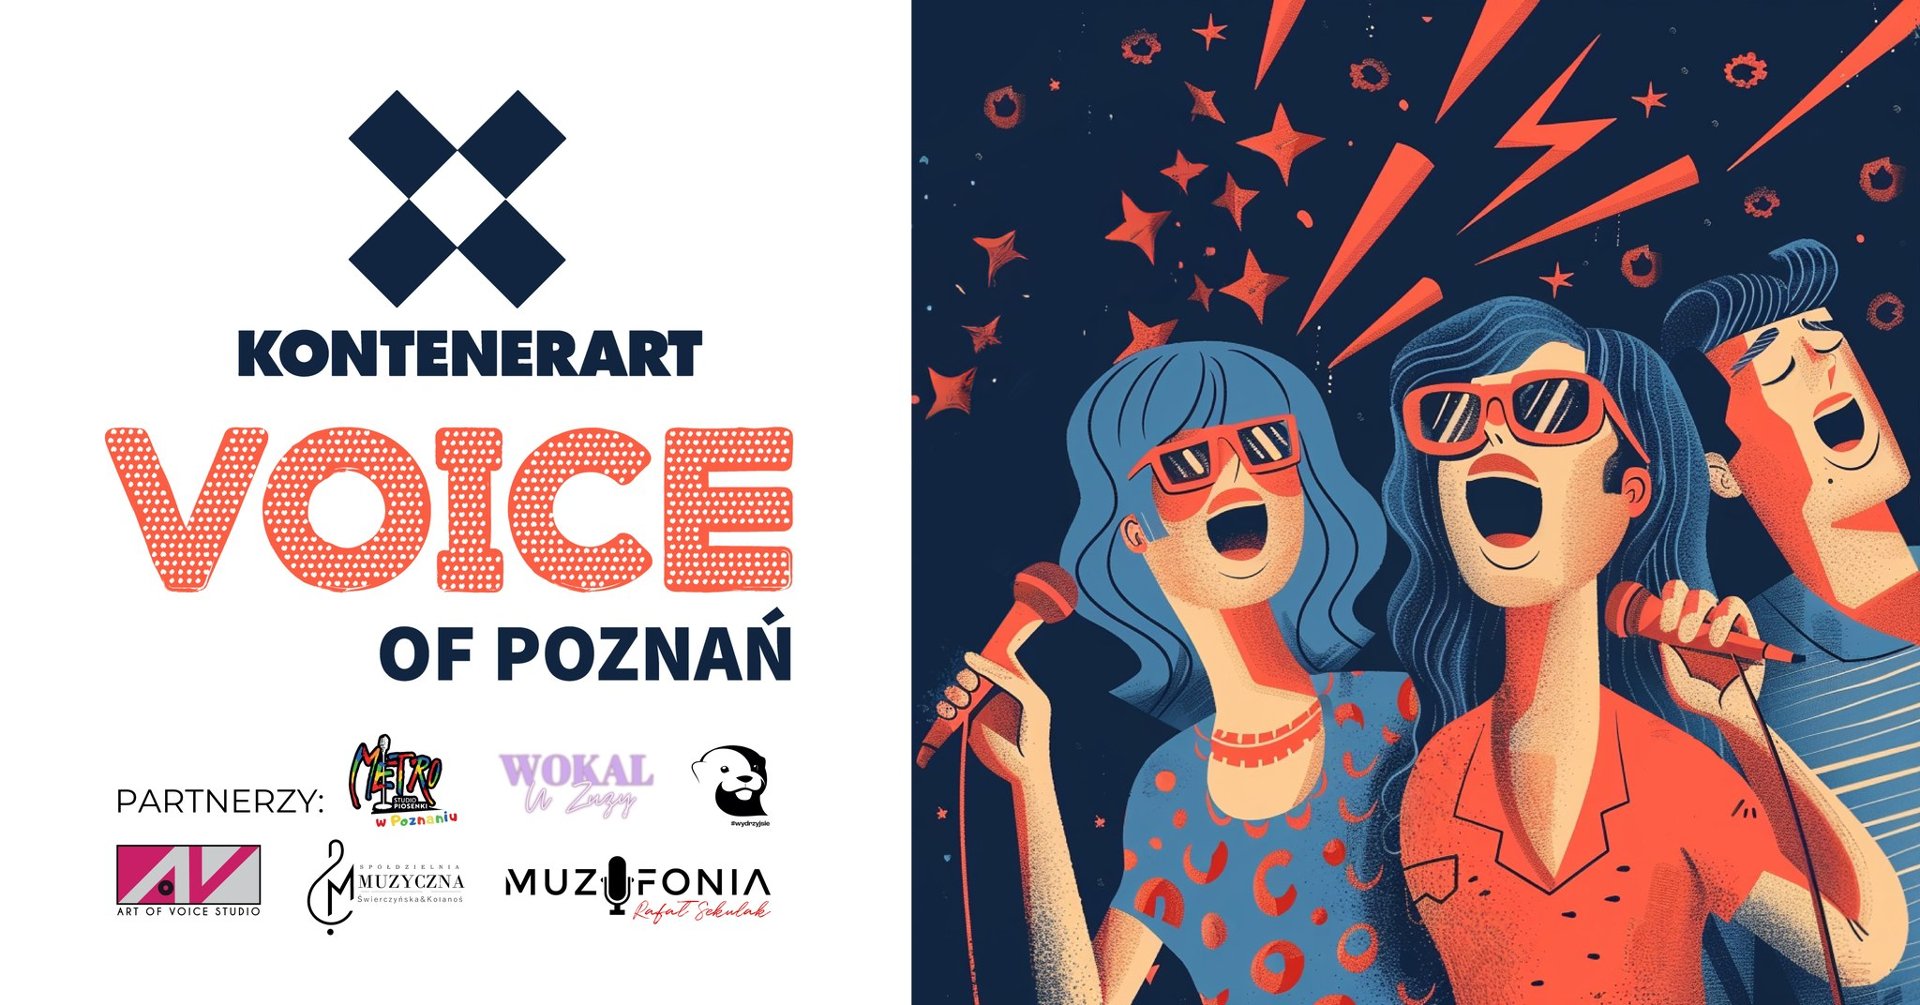 Plakat promujący wydarzenie. Rysunek dwóch kobiet i mężczyzny, którzy śpiewają do mikrofonów. Są ubrani w niebiesko-pomarańczowe ubrania. Po lewej stronie napis "KontenerART Voice o Poznań". Pod napisem loga sponsorów wydarzenia.